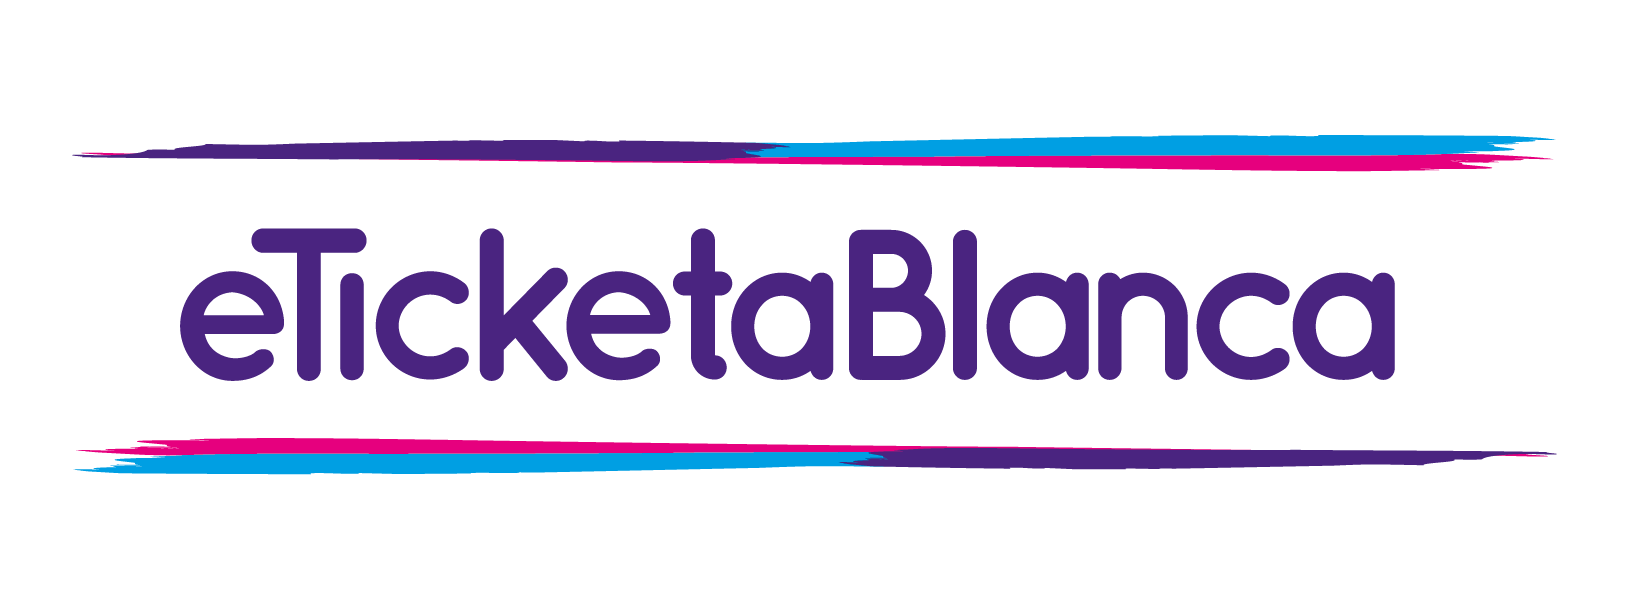 eTicketaBlanca logo